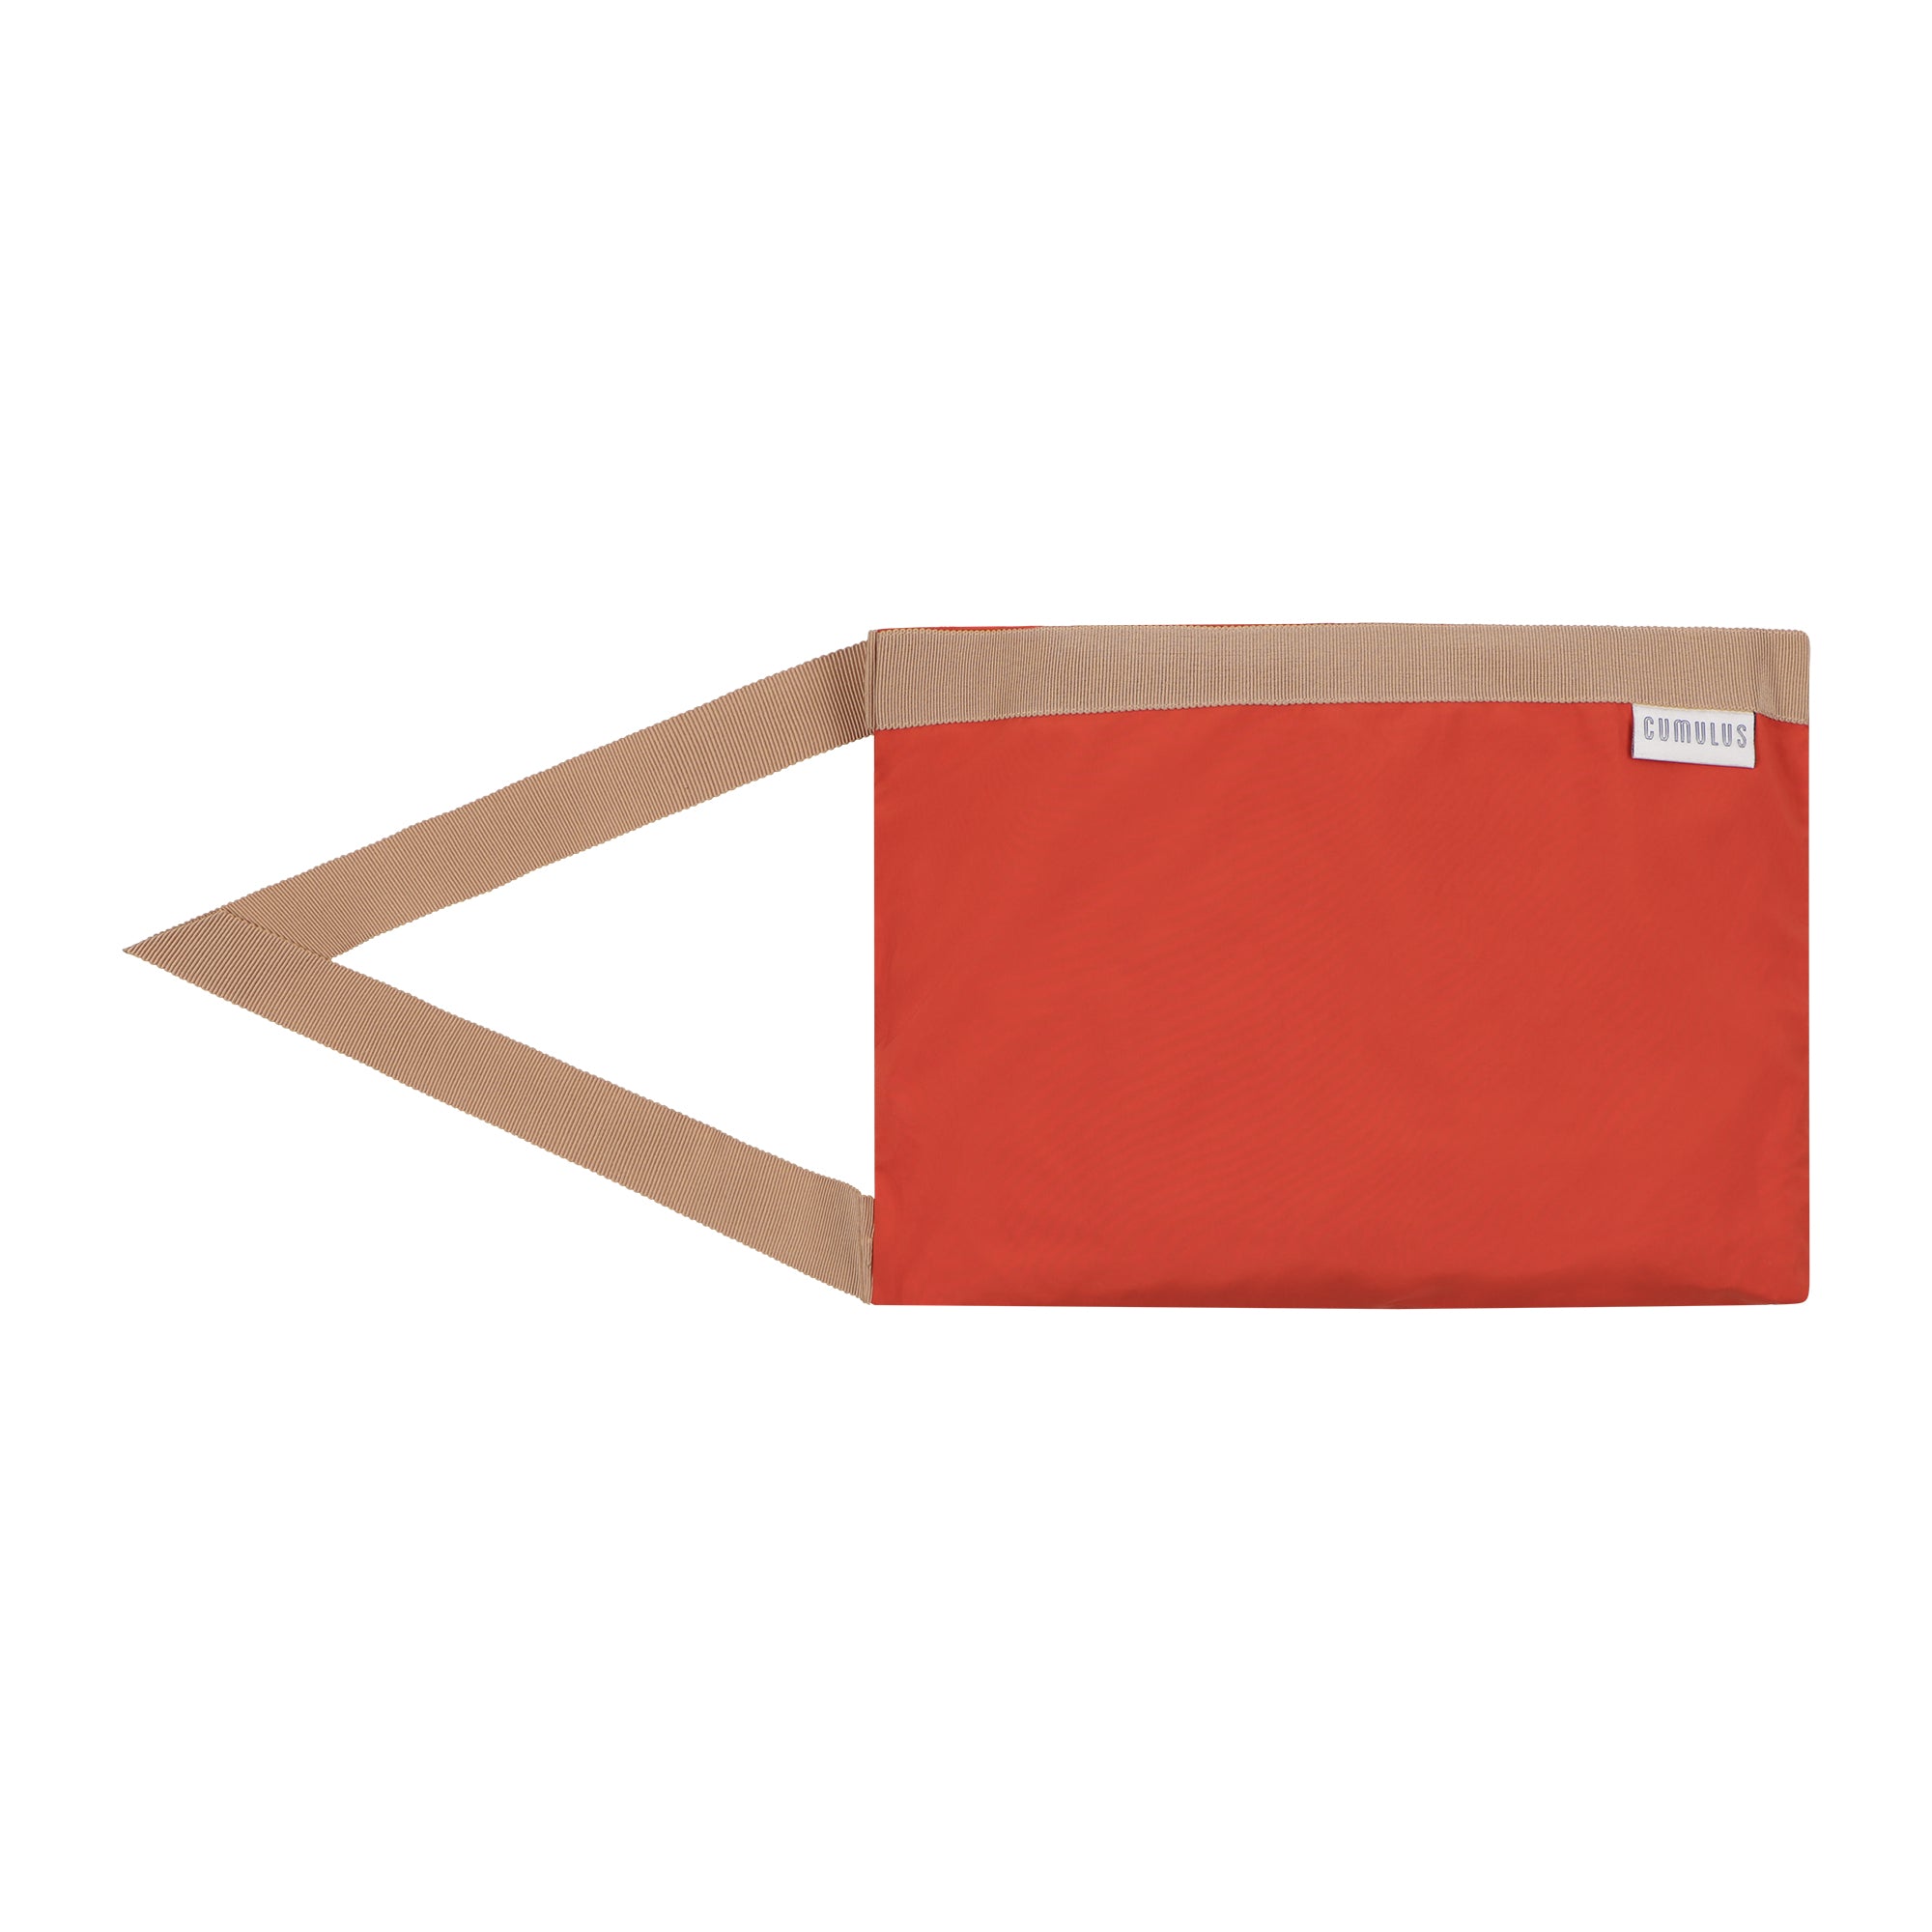 The classic raincoat - orange color - pouch bag